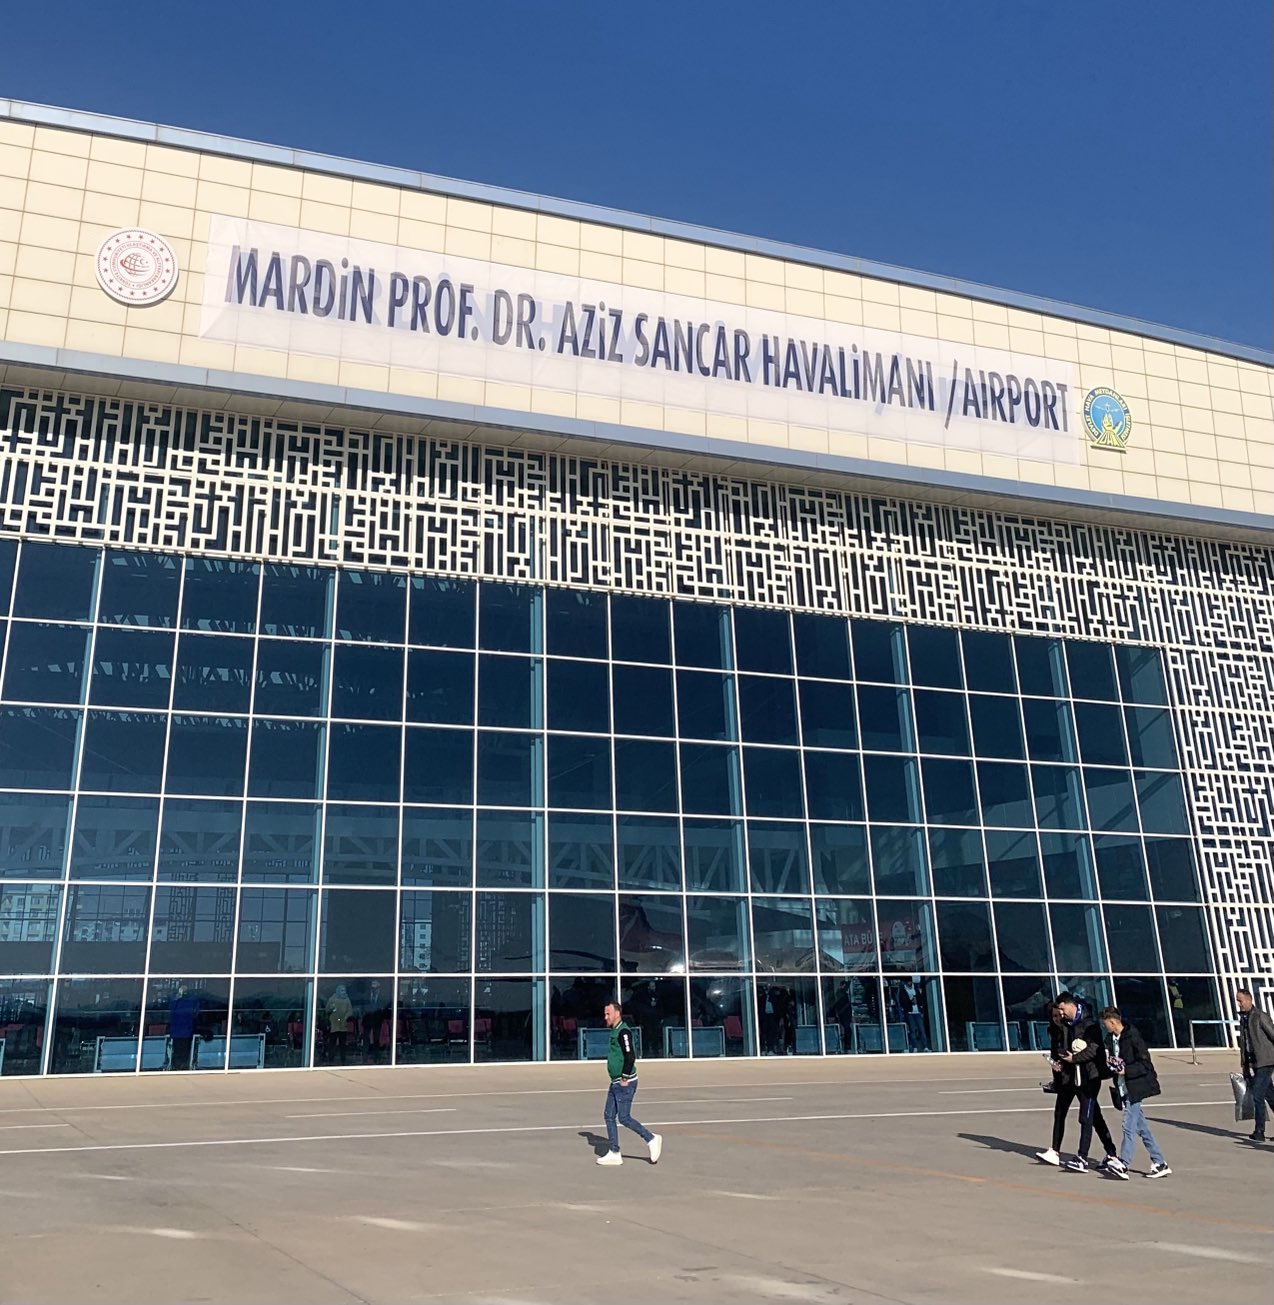 Mardin Havalimanı’nın ismi “Mardin